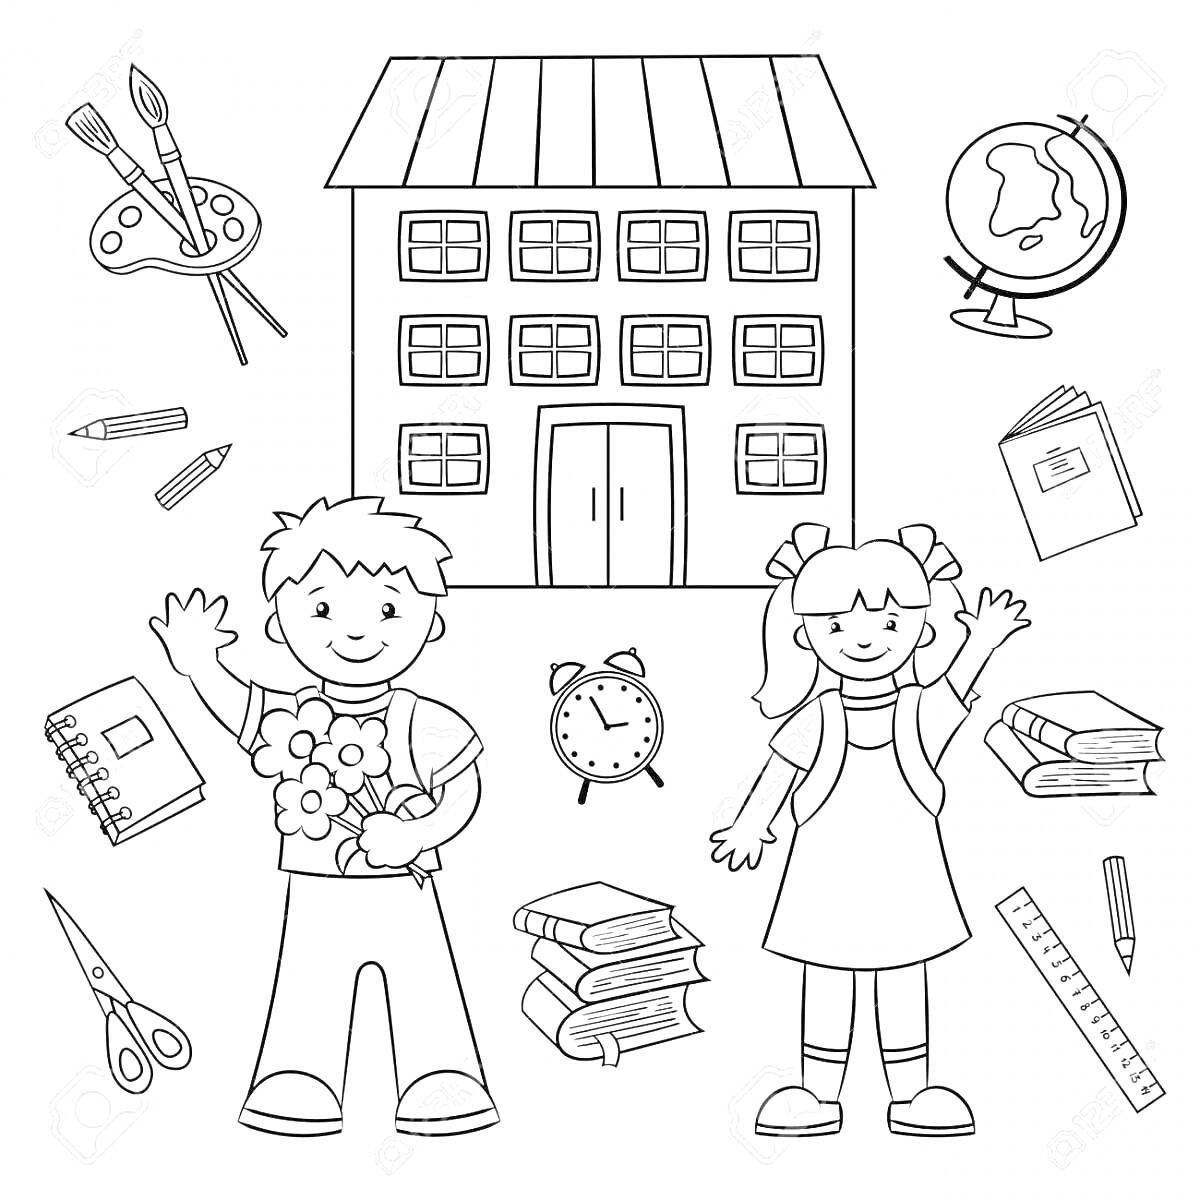 Раскраска Школьный двор с детьми, школьное здание, глобус, краски с кисточками, ножницы, книги, линейка, будильник, карандаши, цветы, тетради